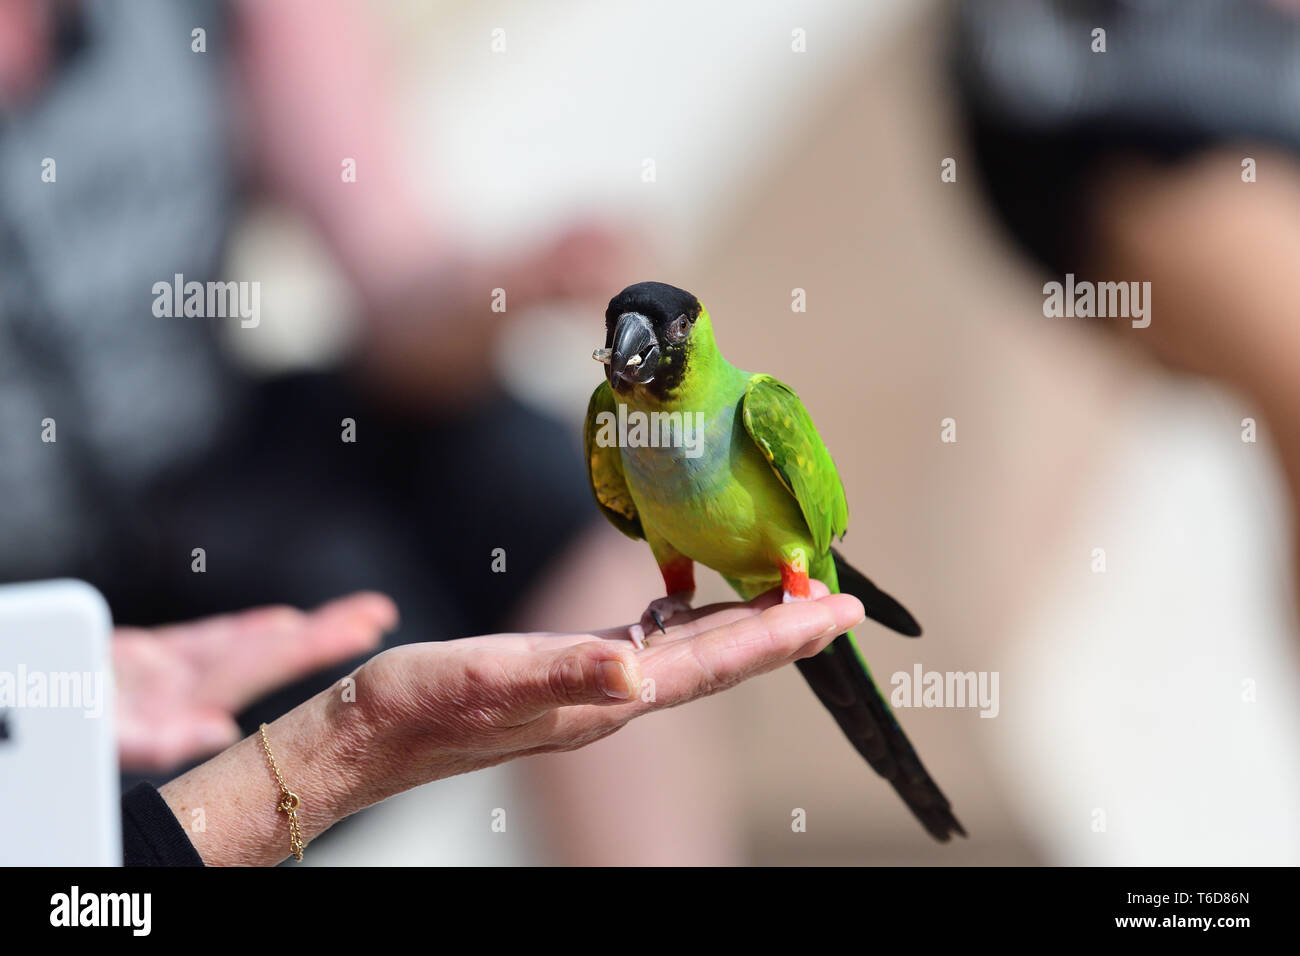 Porträt einer nanday parakeet (aratinga nenday) hocken in einer Personen Hand beim Essen ein Samen Stockfoto